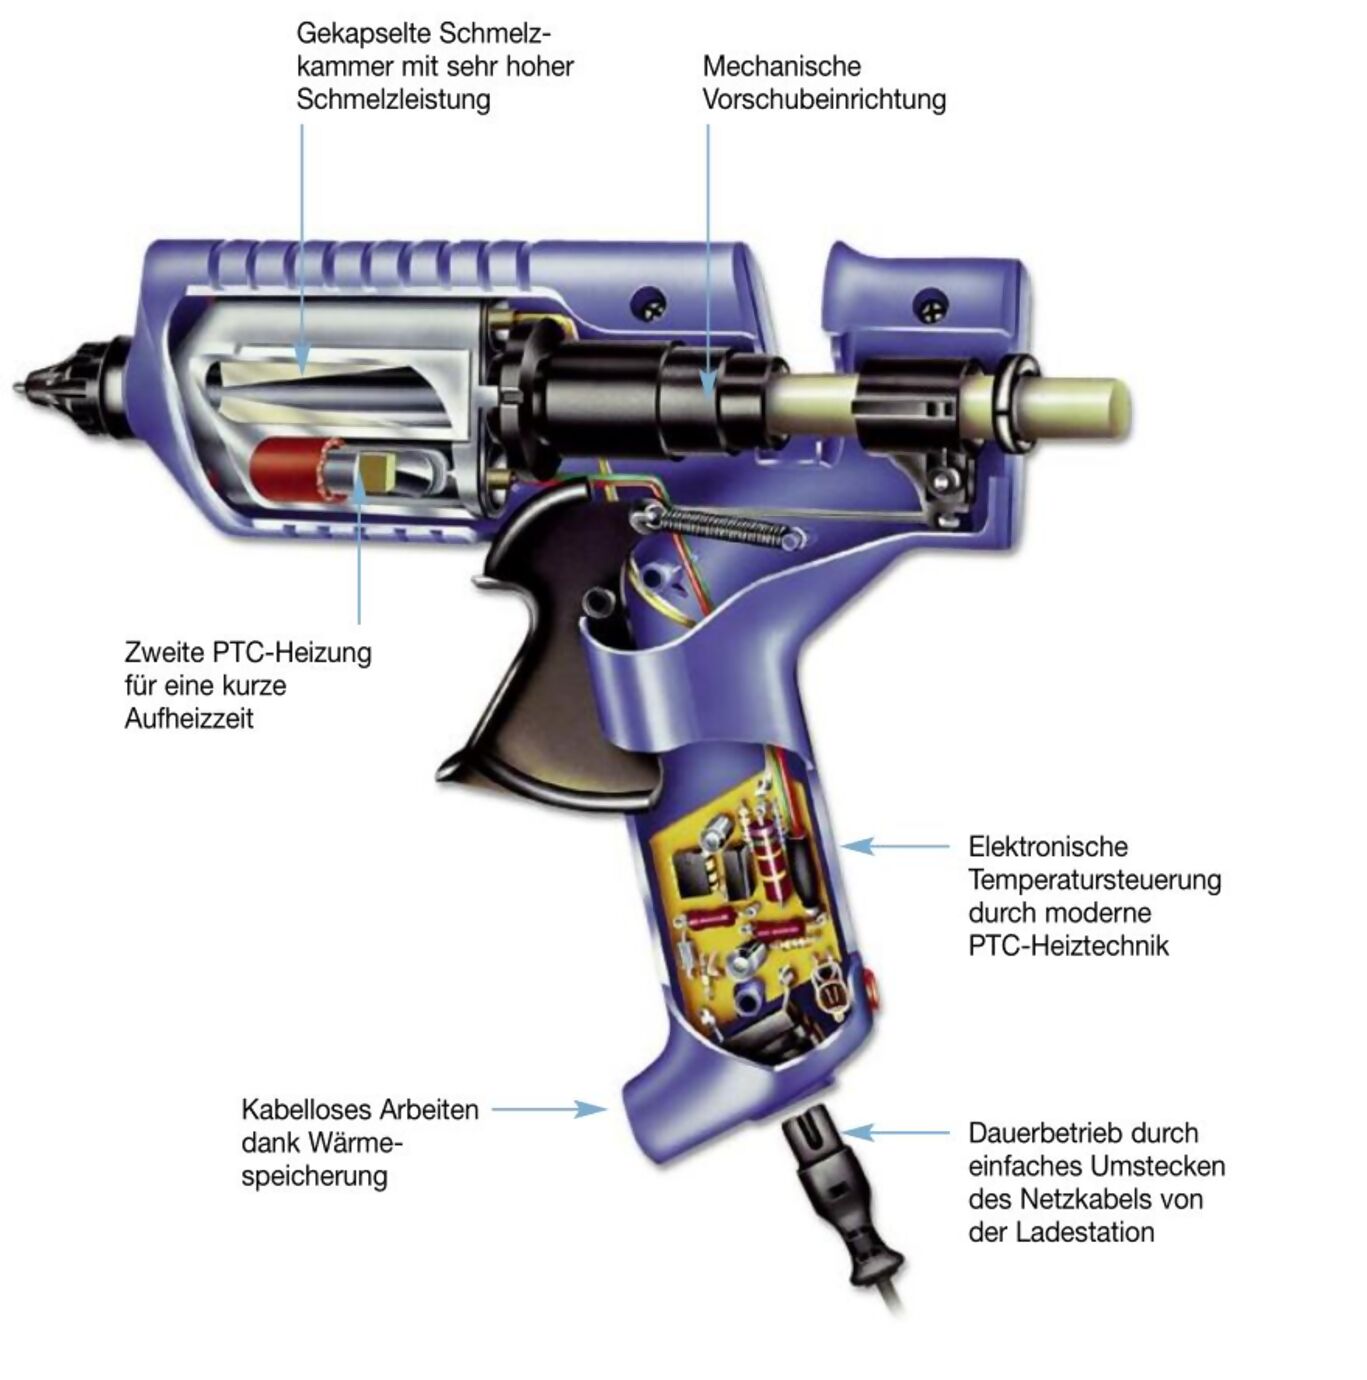 Bild einer offenen Heißklebepistole mit Erklärungstexten zur Funktionsweise